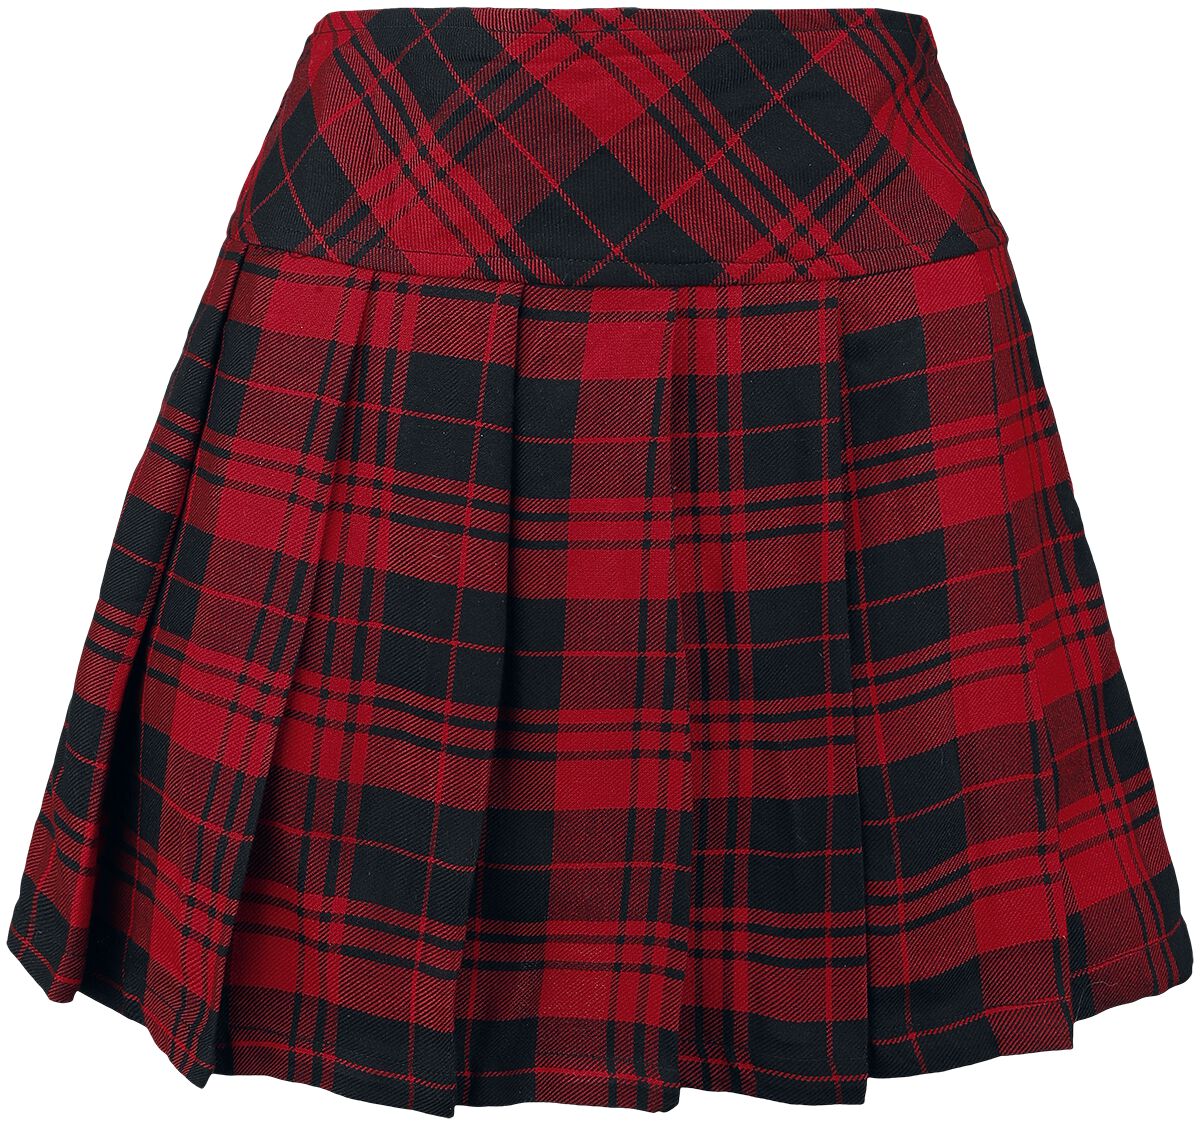 Heartless - Gothic Kurzer Rock - Zorya Skirt - XS bis XXL - für Damen - Größe XL - rot/schwarz